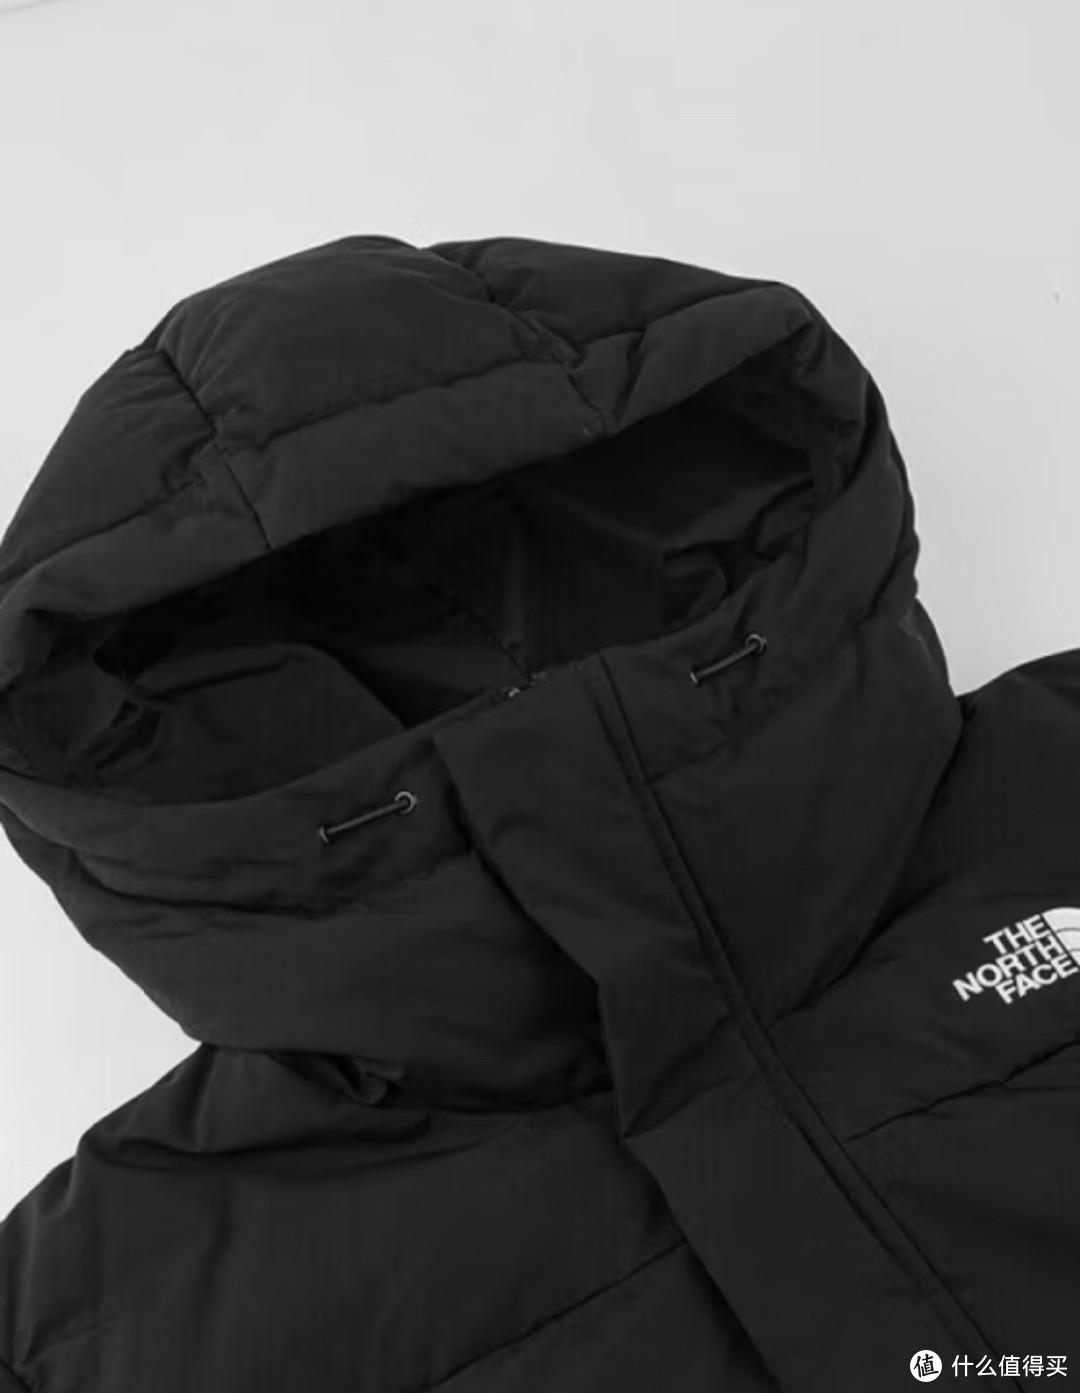 别再为了保暖而牺牲时尚了!The North Face 北面羽绒服加厚 700 蓬鹅绒外套，让你在户外也能穿出时尚!